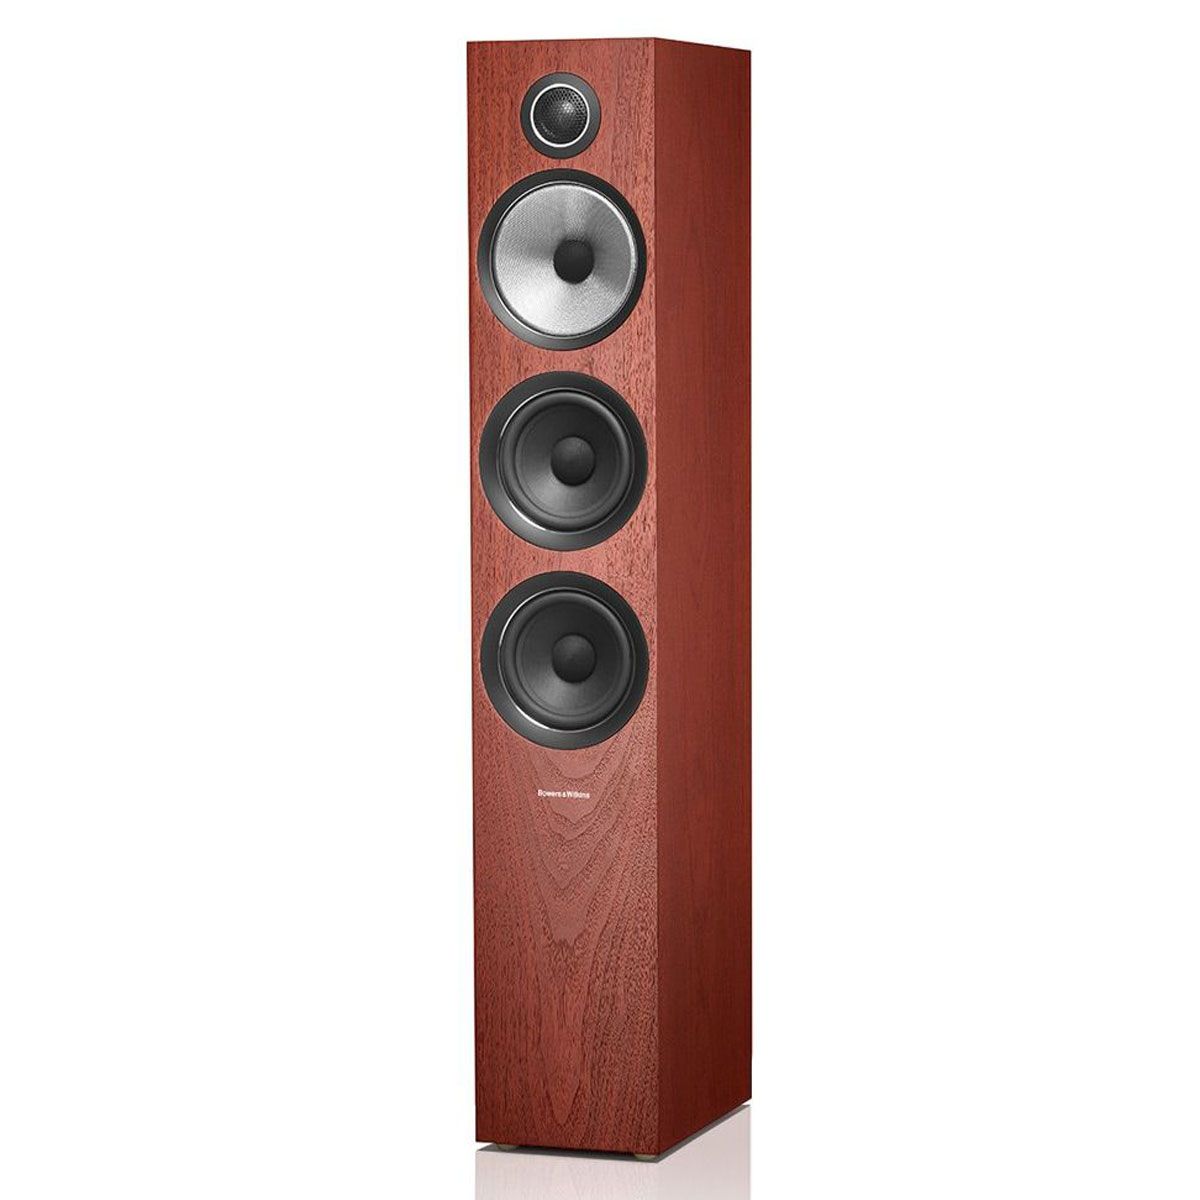 1 1 704 s2 rosenut 700 series2 speakerBowers & Wilkins 704 S2 Floorstanding Speaker - Rosenut - Front Angled View